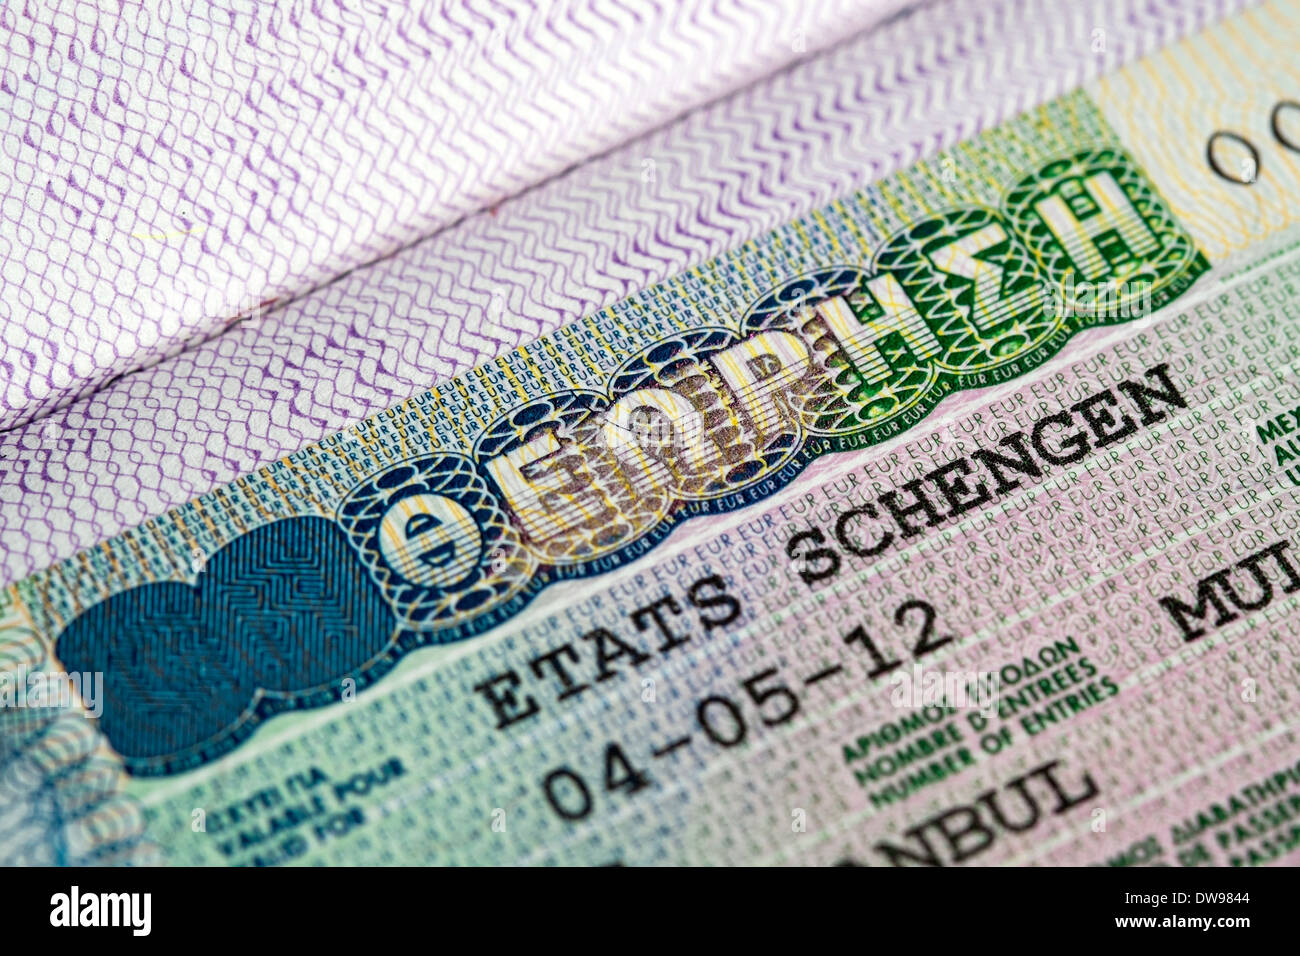 Vue rapprochée de la Grèce sur un passeport visa Schengen Photo Stock -  Alamy